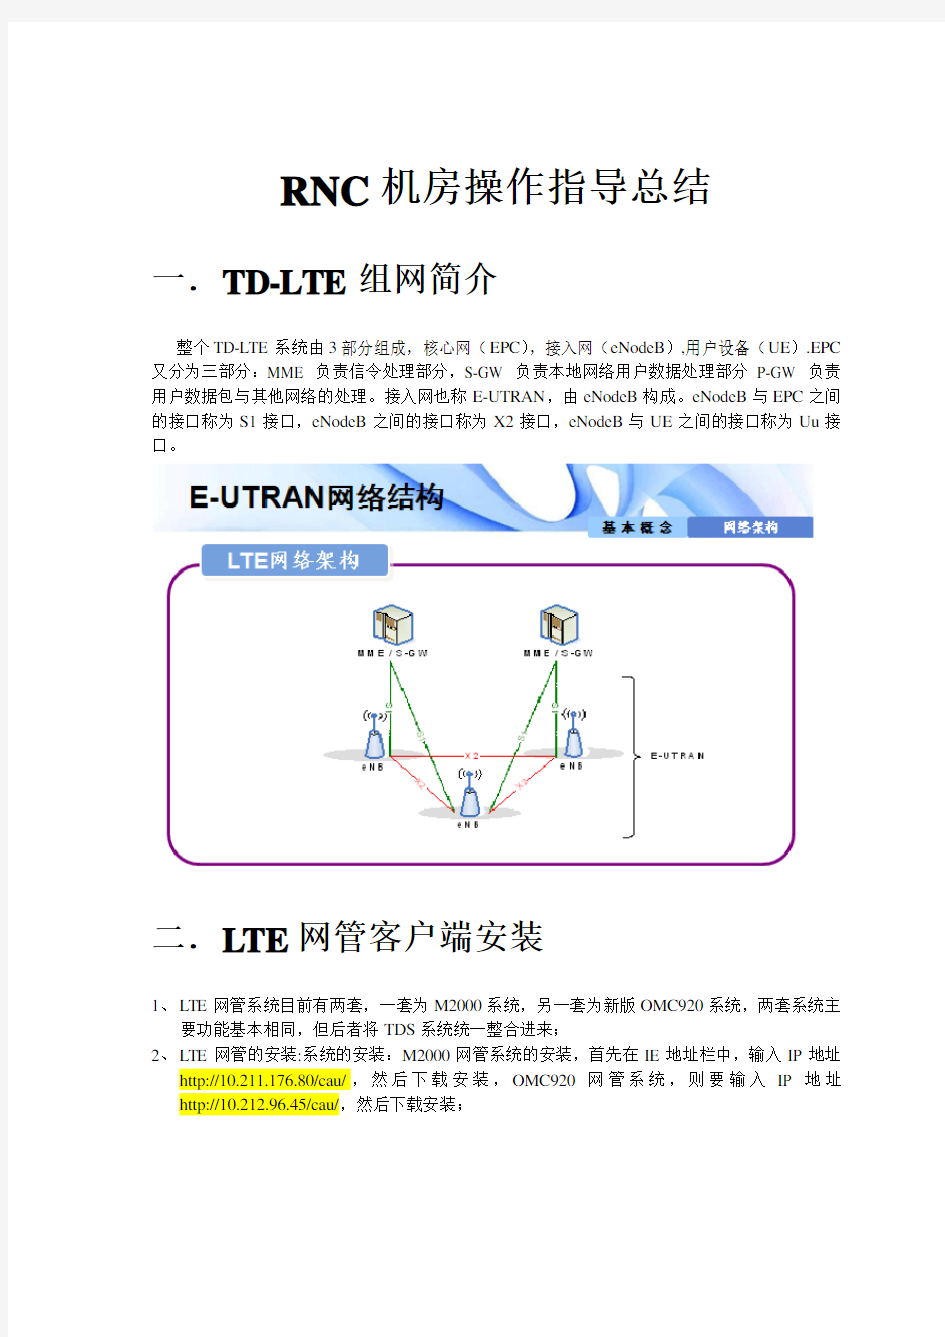 华为TD-LTE后台常用MML命令操作图文展示说明